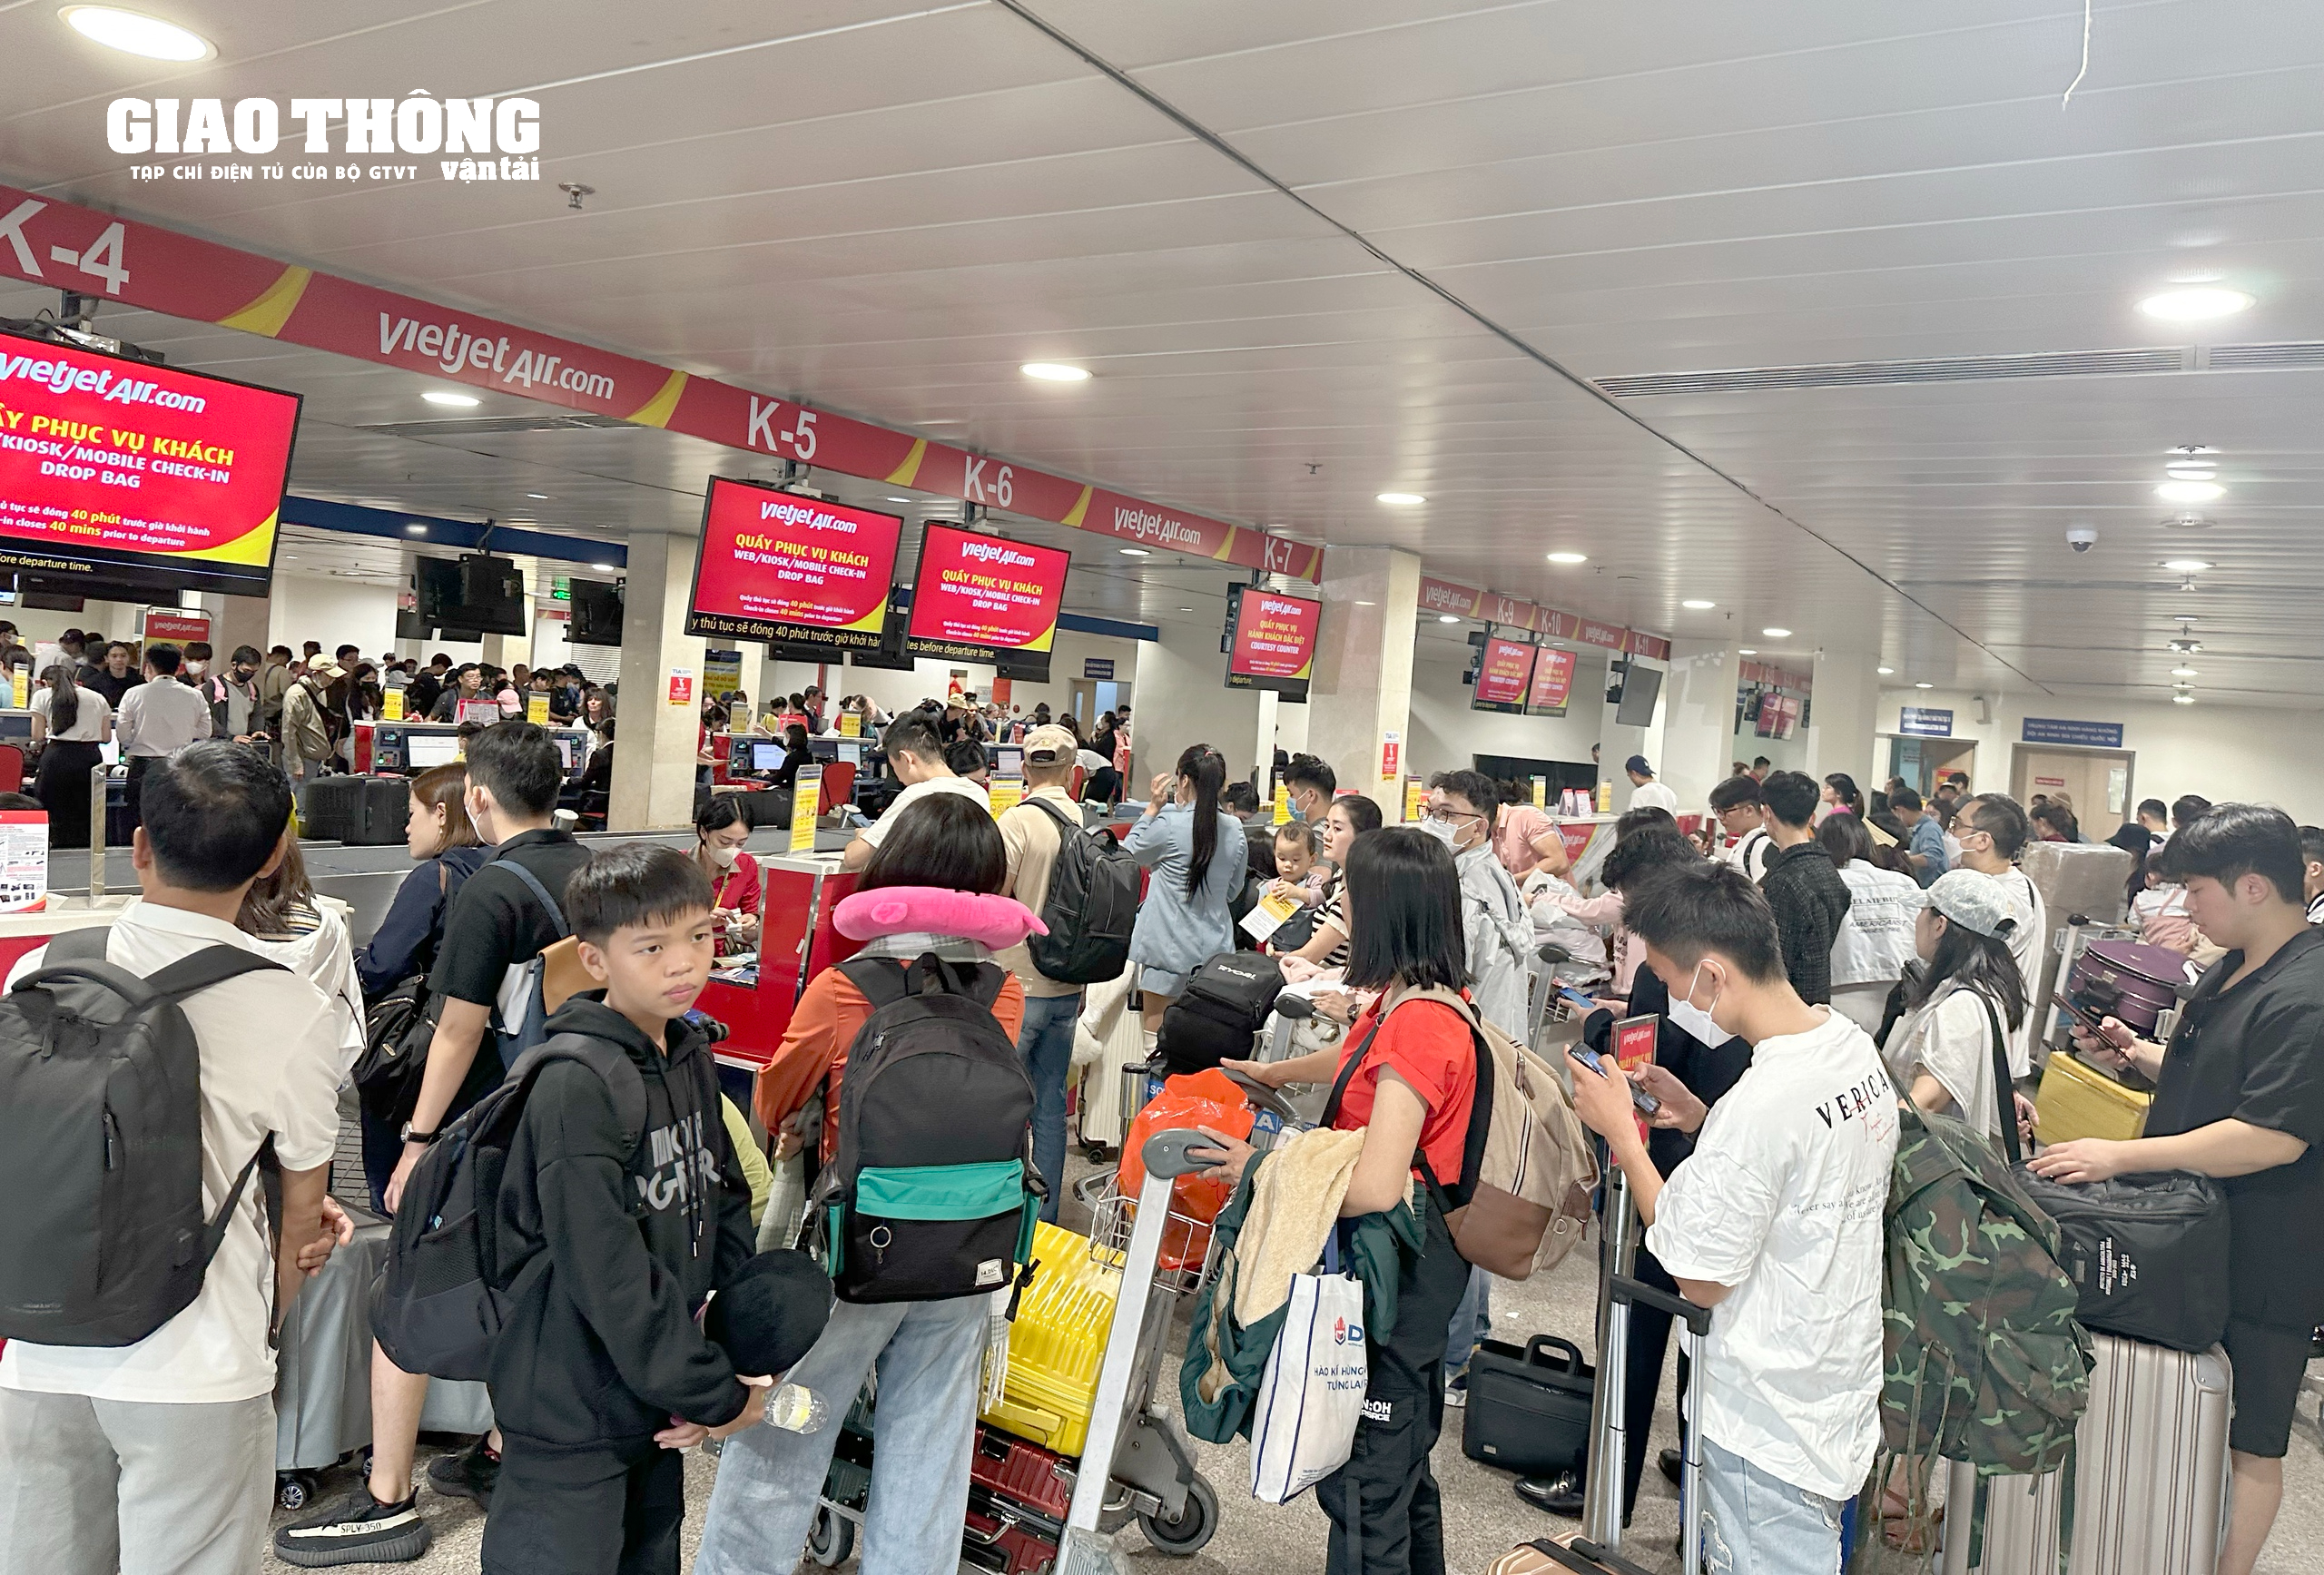 Hàng nghìn người dân xếp hàng chờ làm thủ tục tại sân bay Tân Sơn Nhất về quê đón Tết- Ảnh 1.